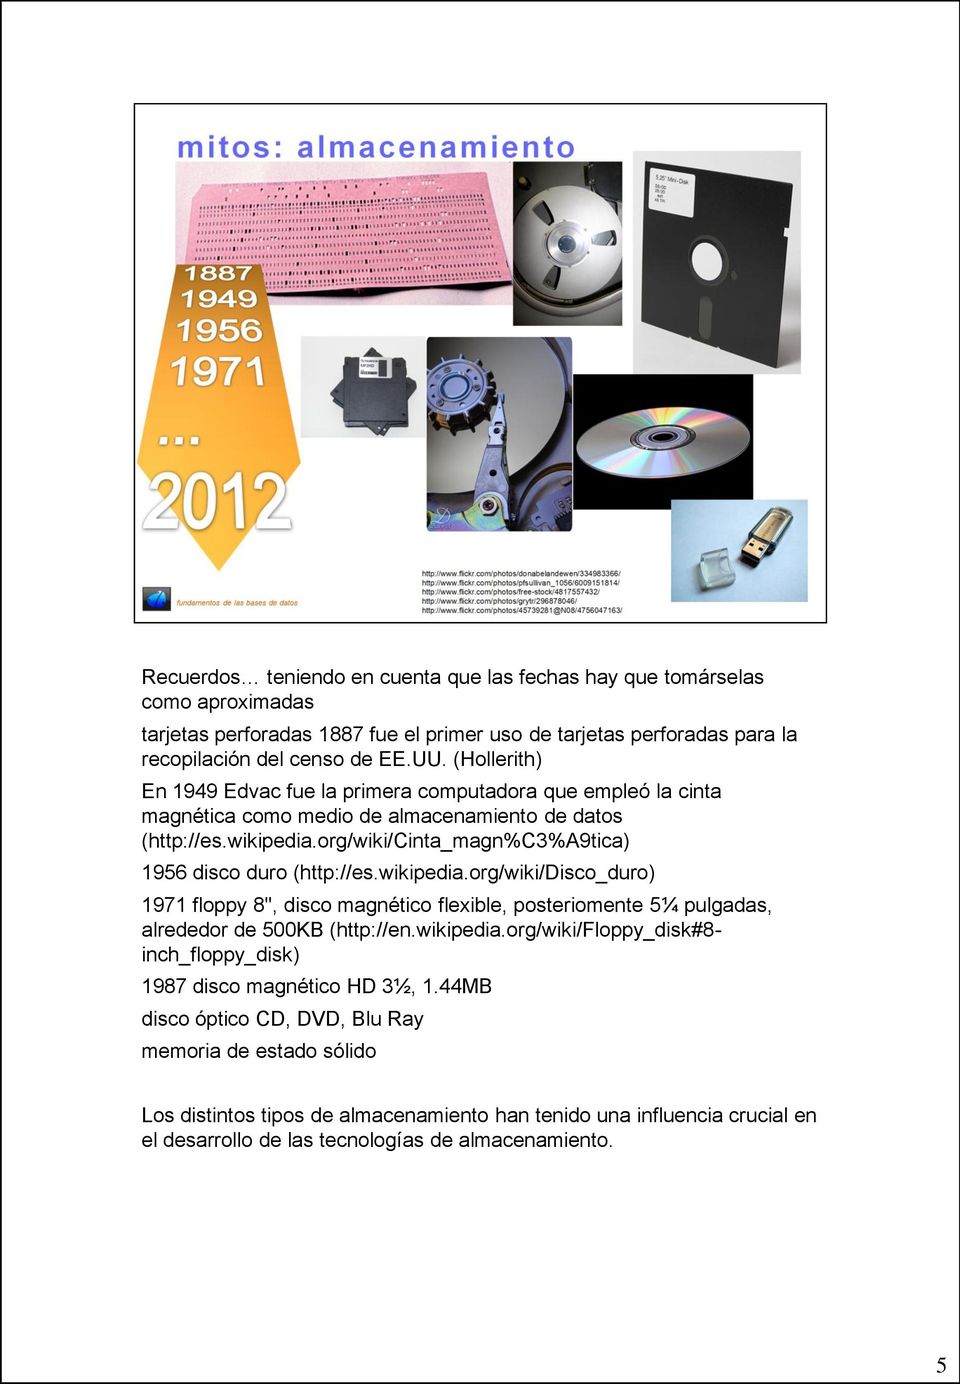 org/wiki/cinta_magn%c3%a9tica) 1956 disco duro (http://es.wikipedia.org/wiki/disco_duro) 1971 floppy 8'', disco magnético flexible, posteriomente 5¼ pulgadas, alrededor de 500KB (http://en.